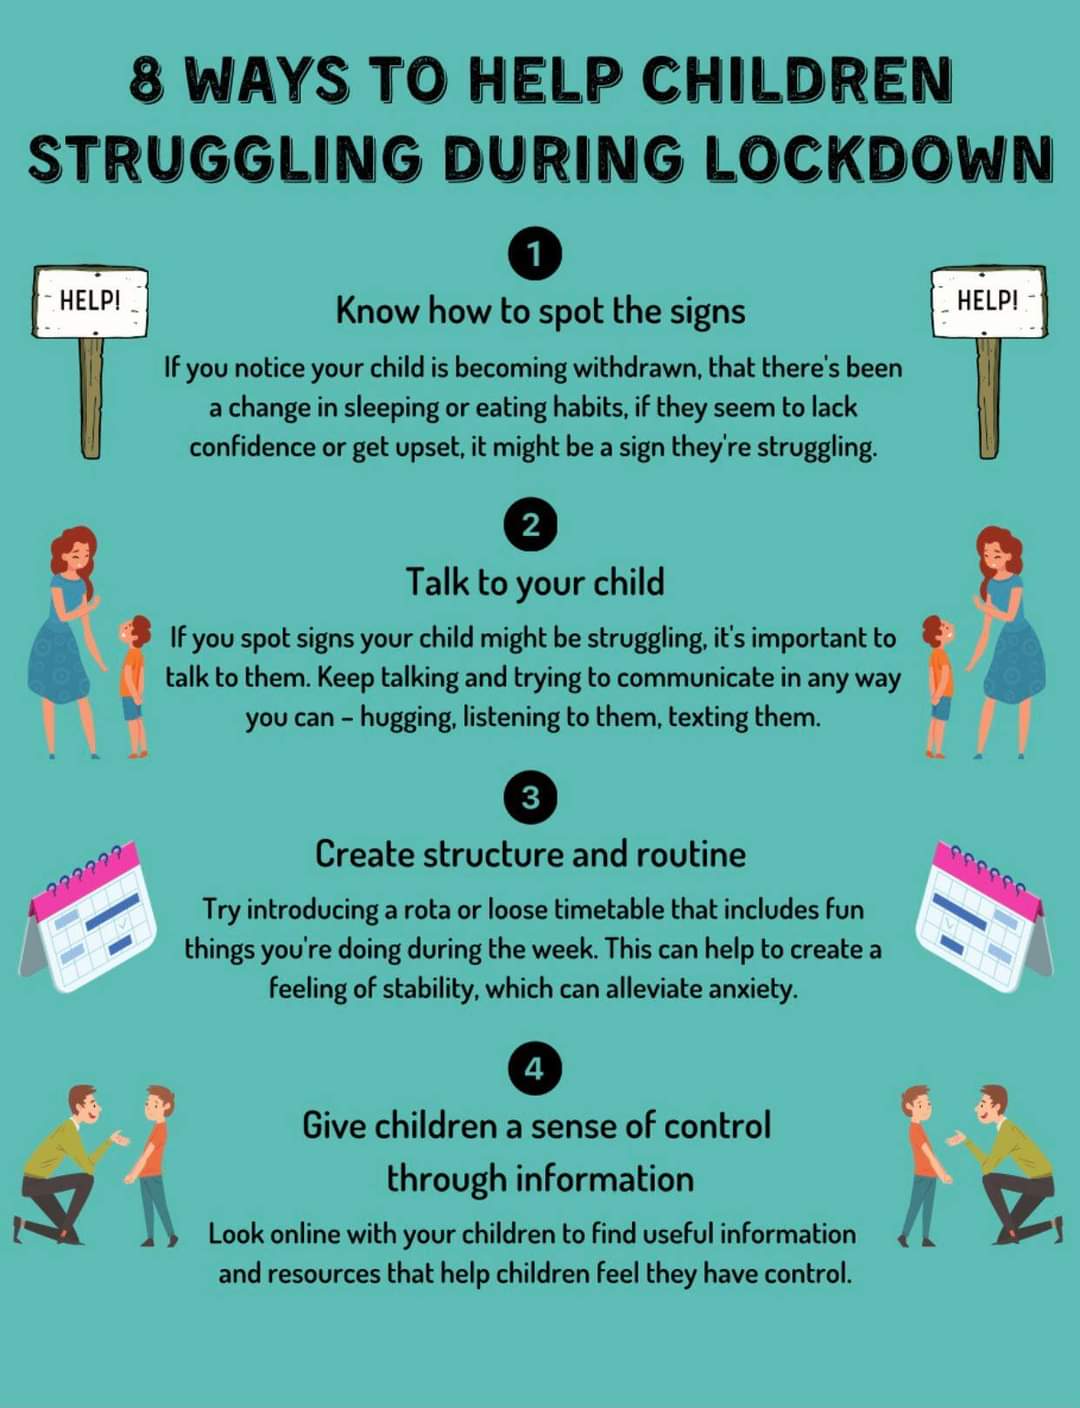 8 Ways to Help Children Struggling in Lockdown: 1 to 4